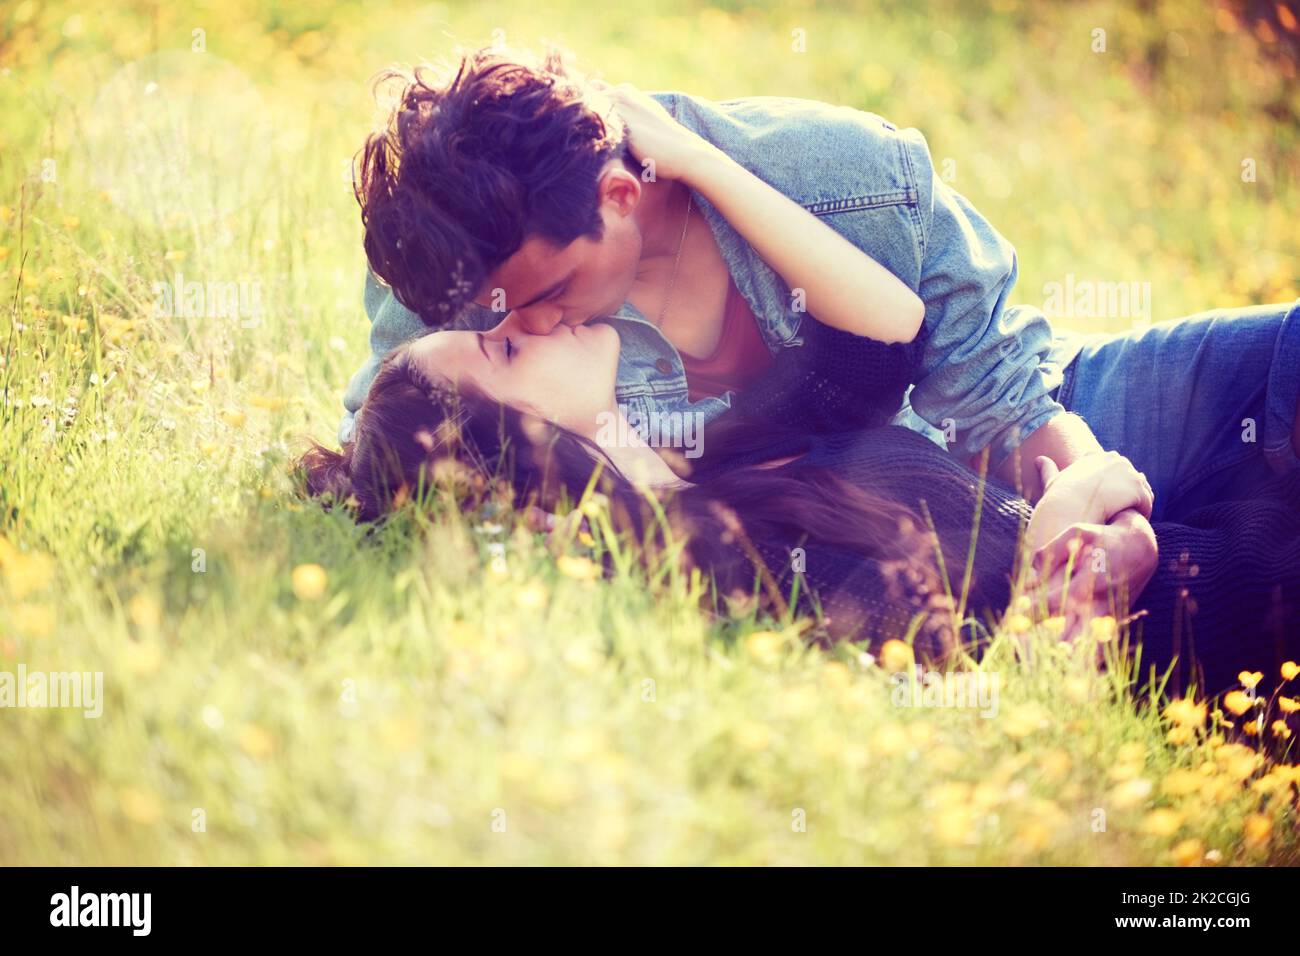 Jugendliche Romantik. Bild im Vintage-Stil eines jungen Paares, das sich in einem Sommerfeld romantisch küsst. Stockfoto